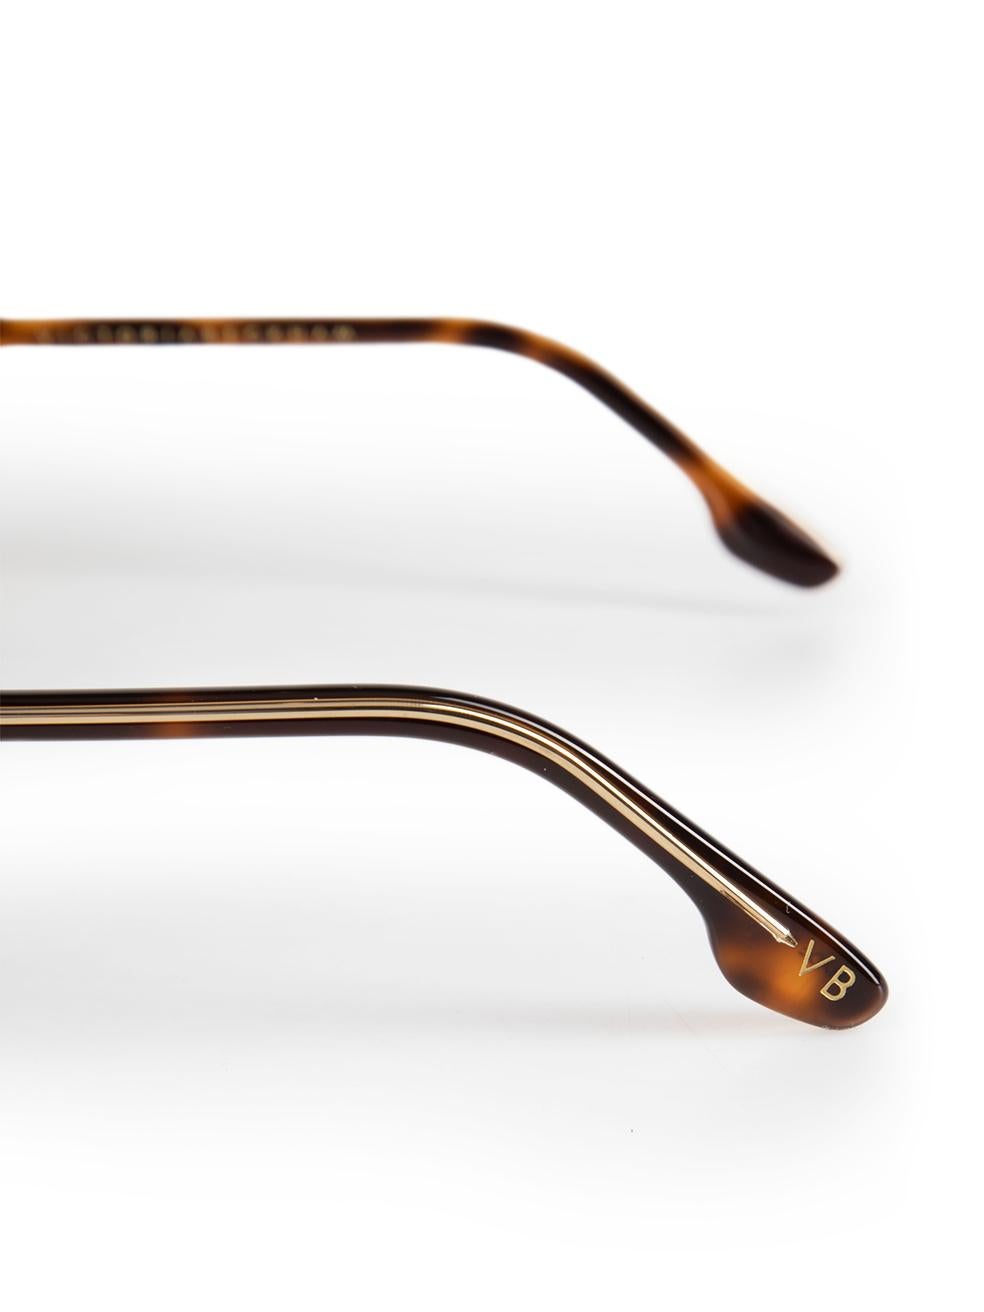 Victoria Beckham Brown Tortoiseshell Shield Sunglasses For Sale 2